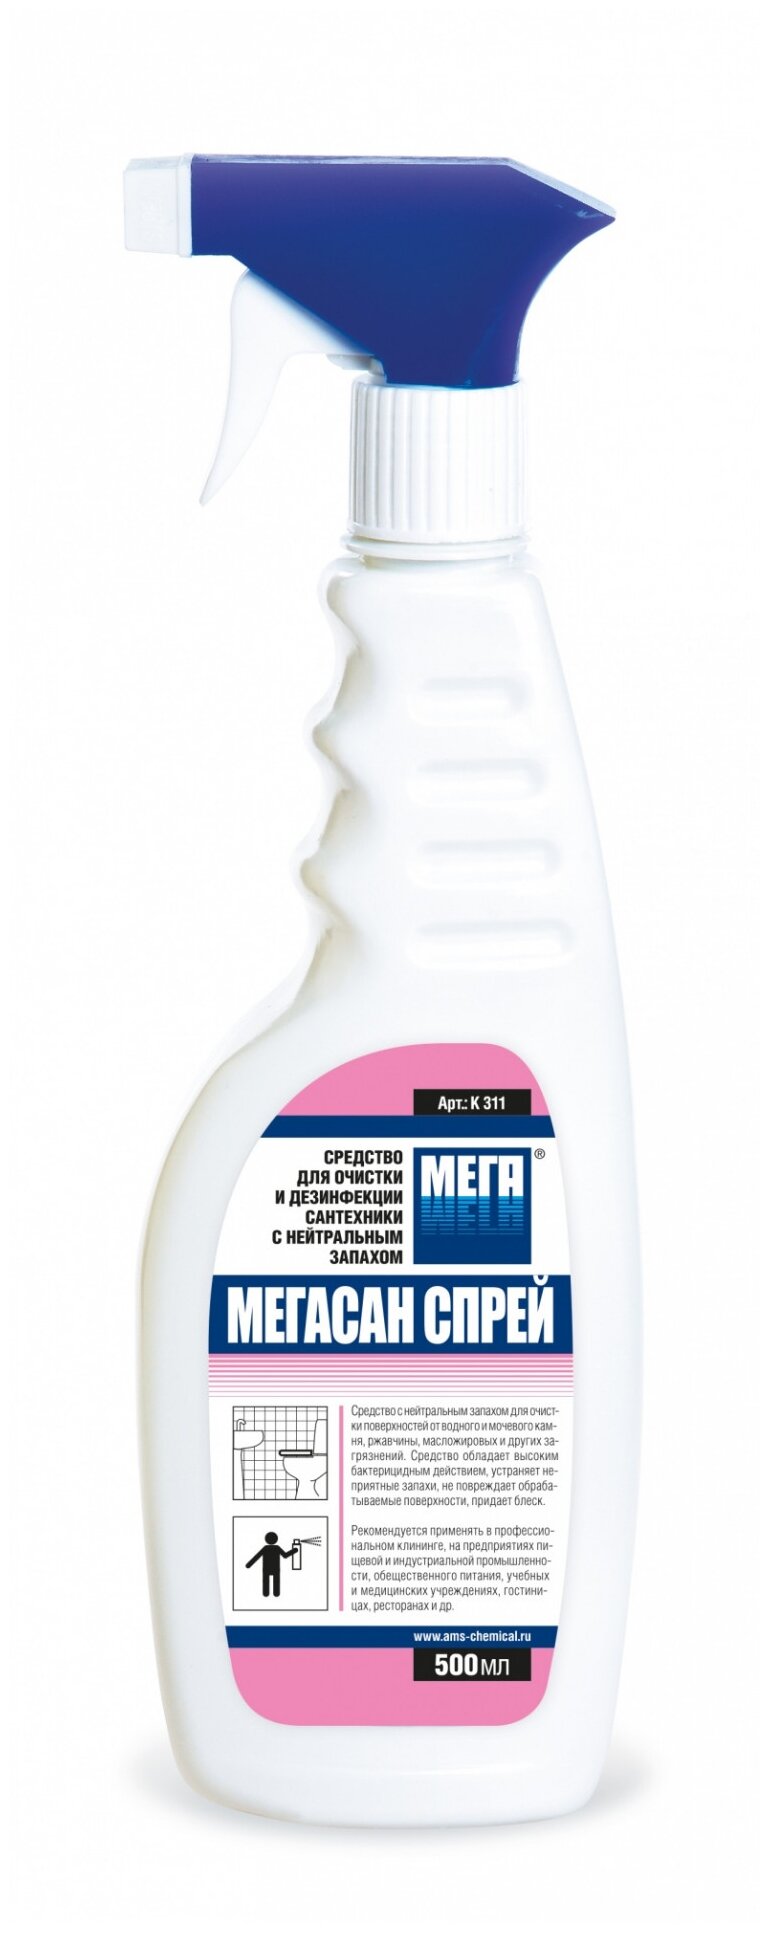 Средство для санитарной очистки сантехники с нейтральным запахом Мегасан Cпрей Мега